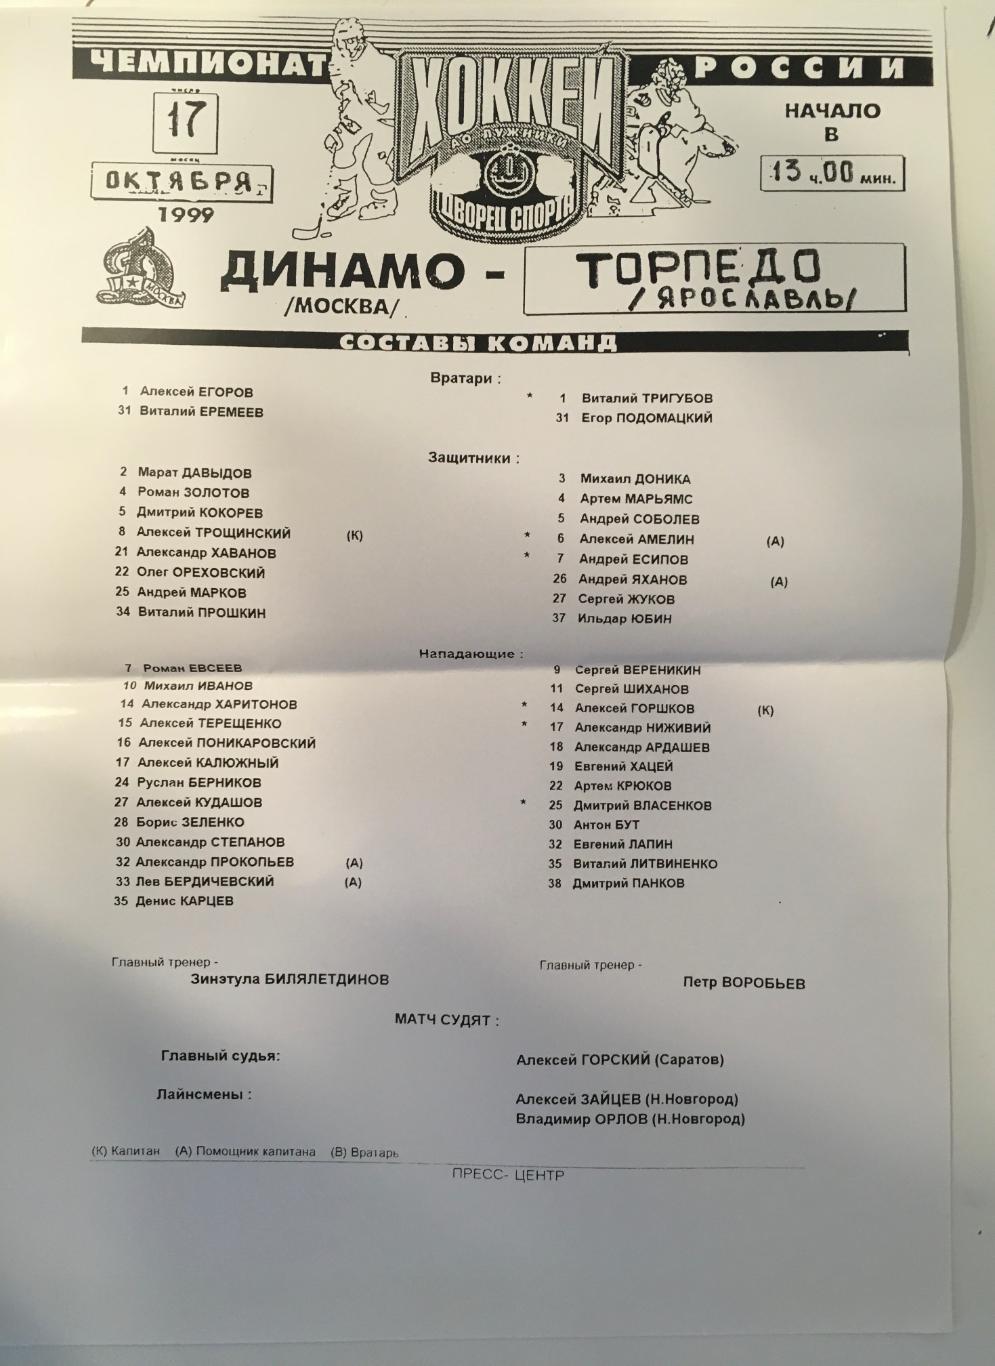 Динамо Москва - Торпедо Ярославль - 17 октября 1999